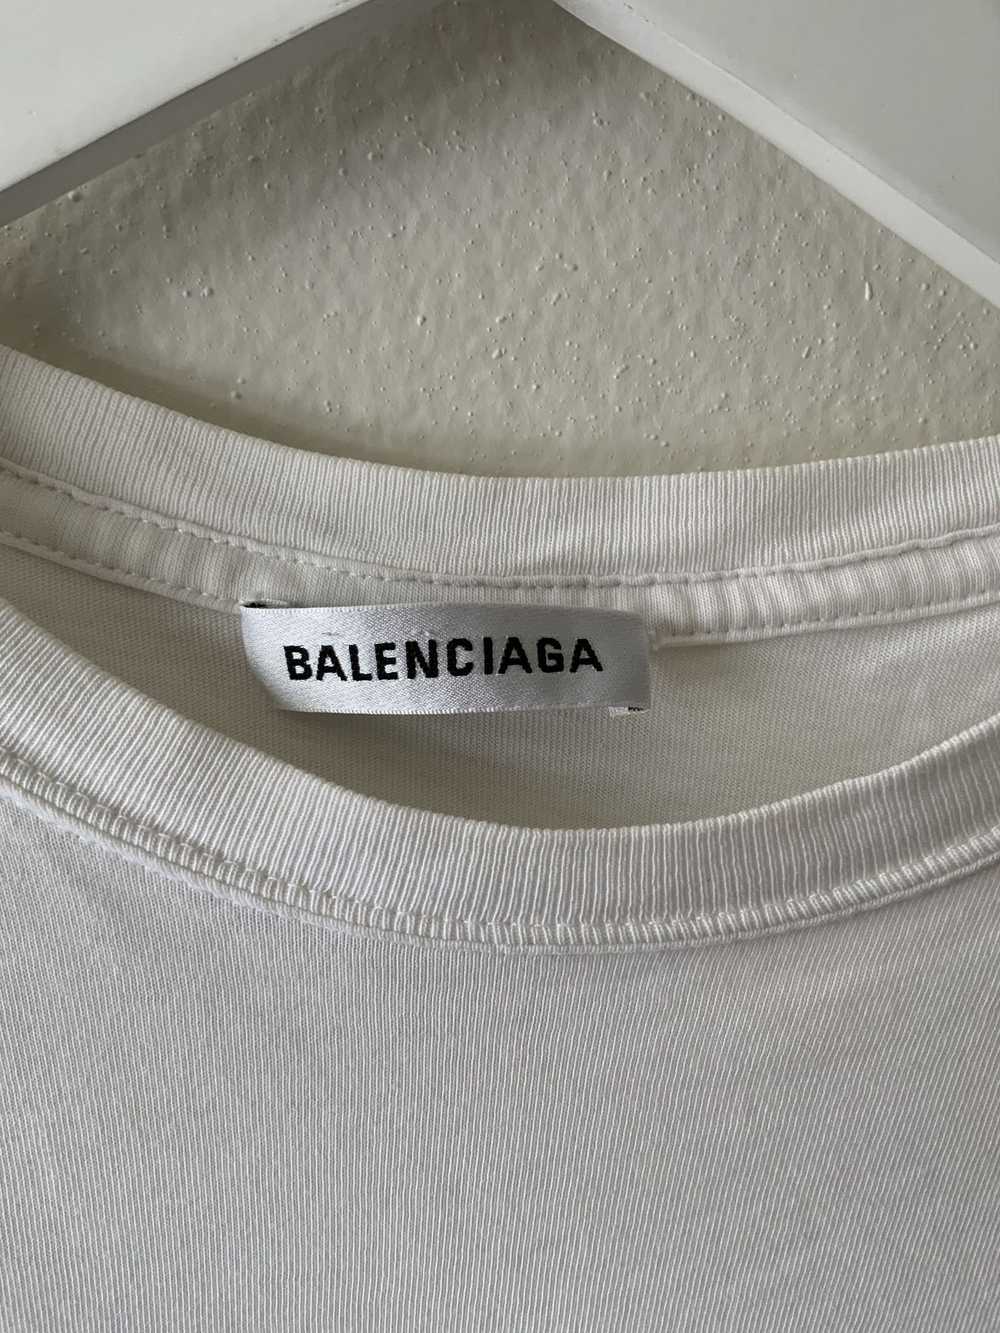 Balenciaga Balenciaga Small Copyright Logo T shirt - image 2